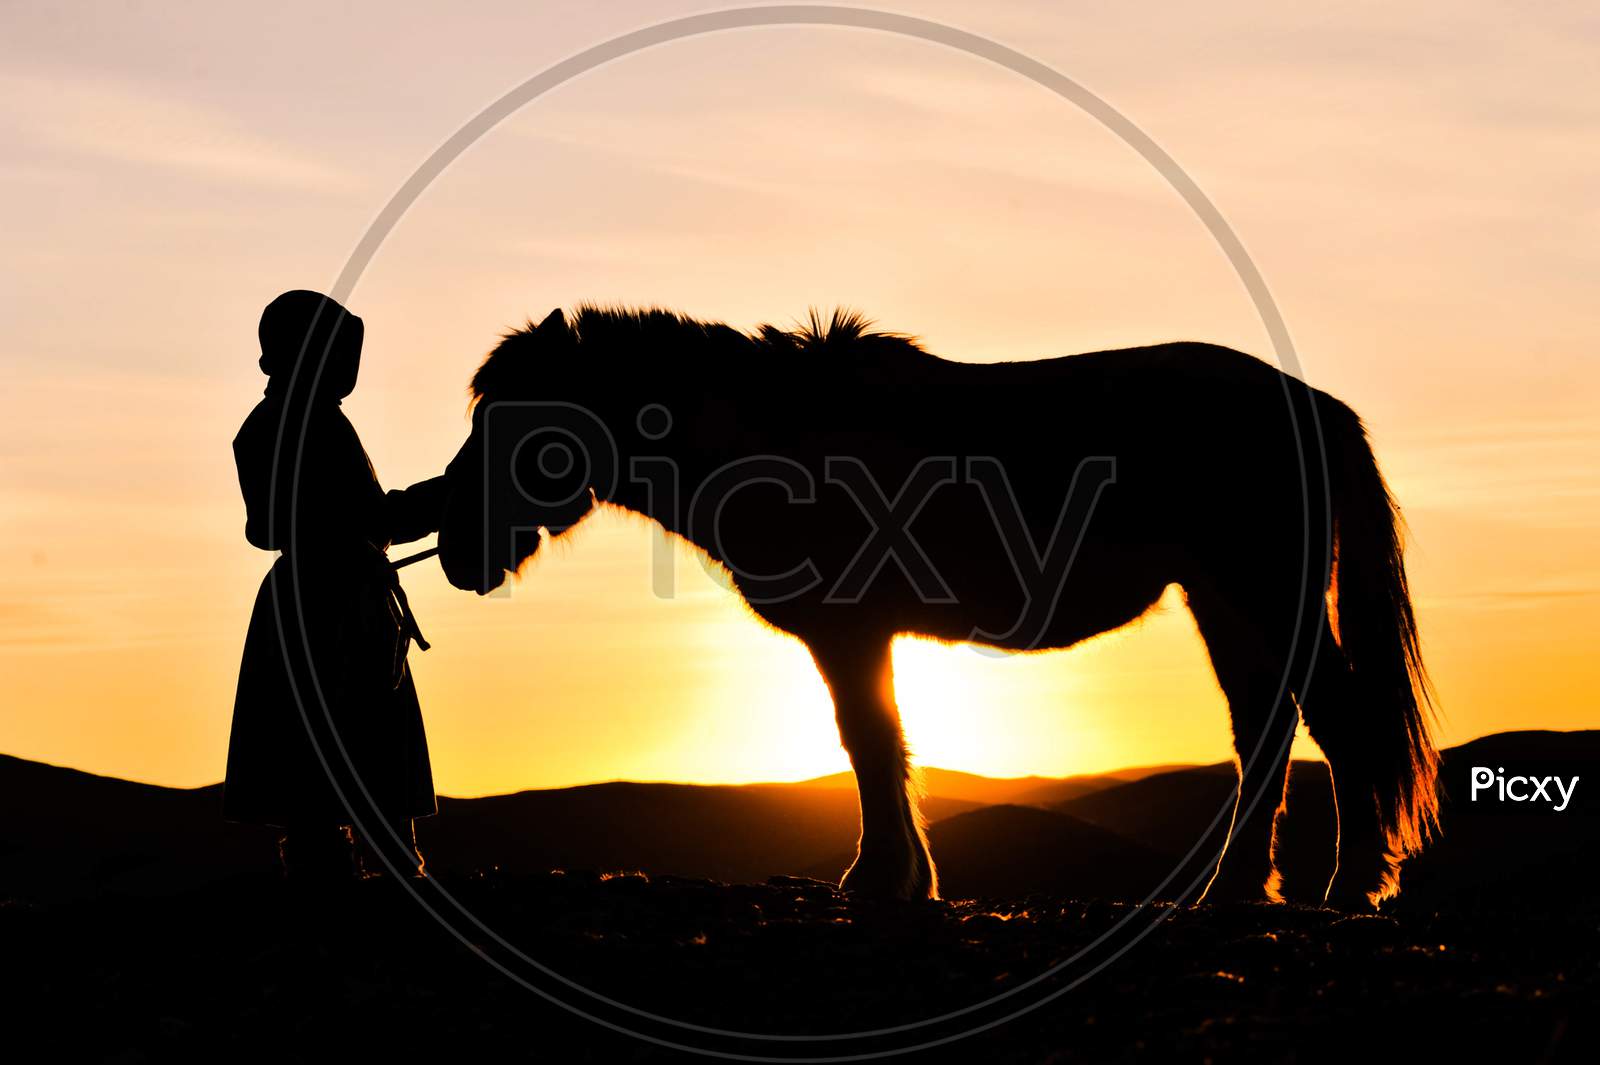 Mongolian horse rider son